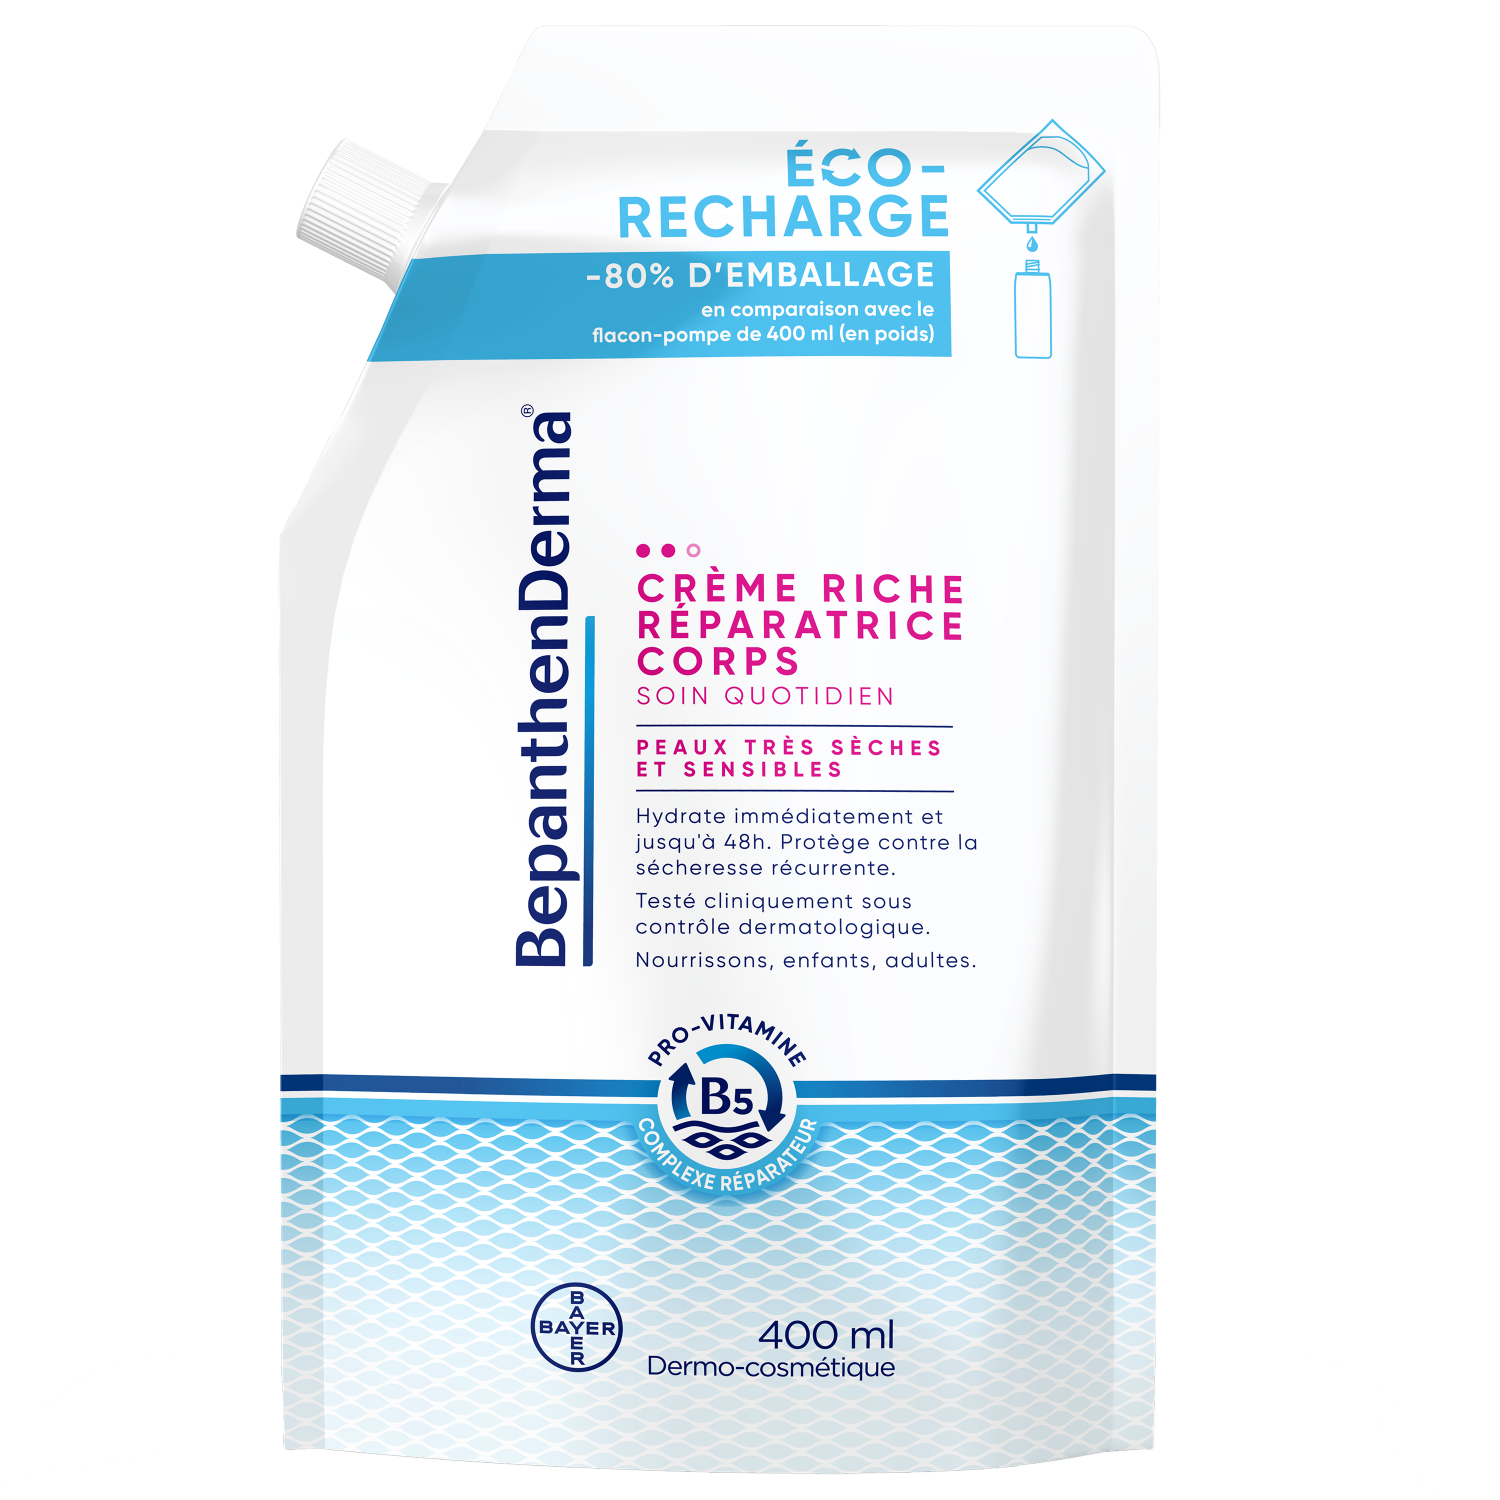 BepanthenDerma Crème Riche Réparatrice Corps Éco-Recharge 400 ml Peaux sèches et sensibles